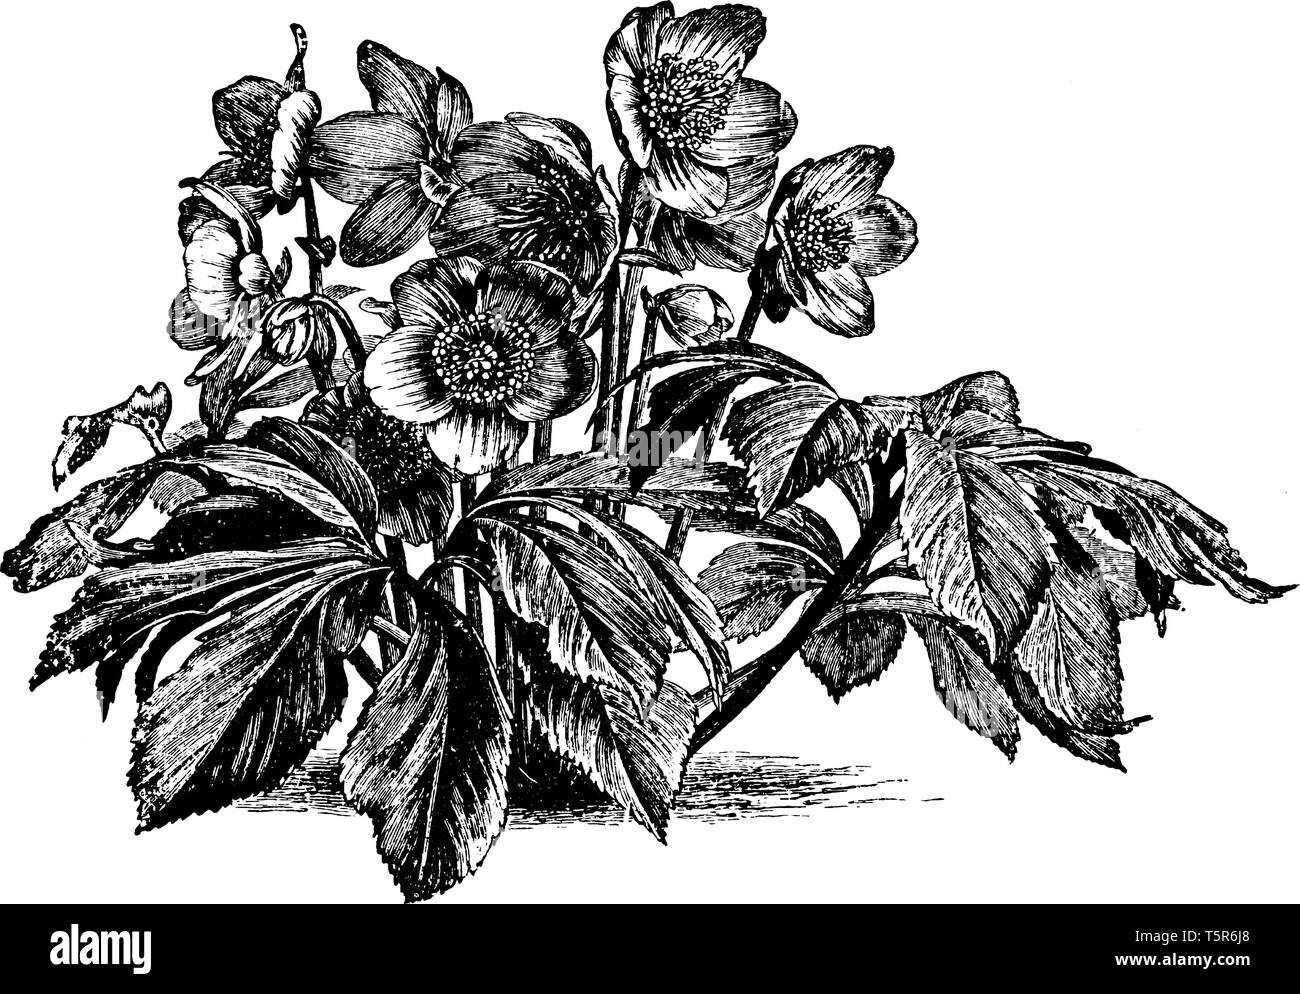 Das Bild zeigt eine Christrose auch als Helleborus niger bekannt. Helleborus niger ist eine immergrüne Pflanze mit dunklen ledrigen Blätter auf pedate St durchgeführt Stock Vektor